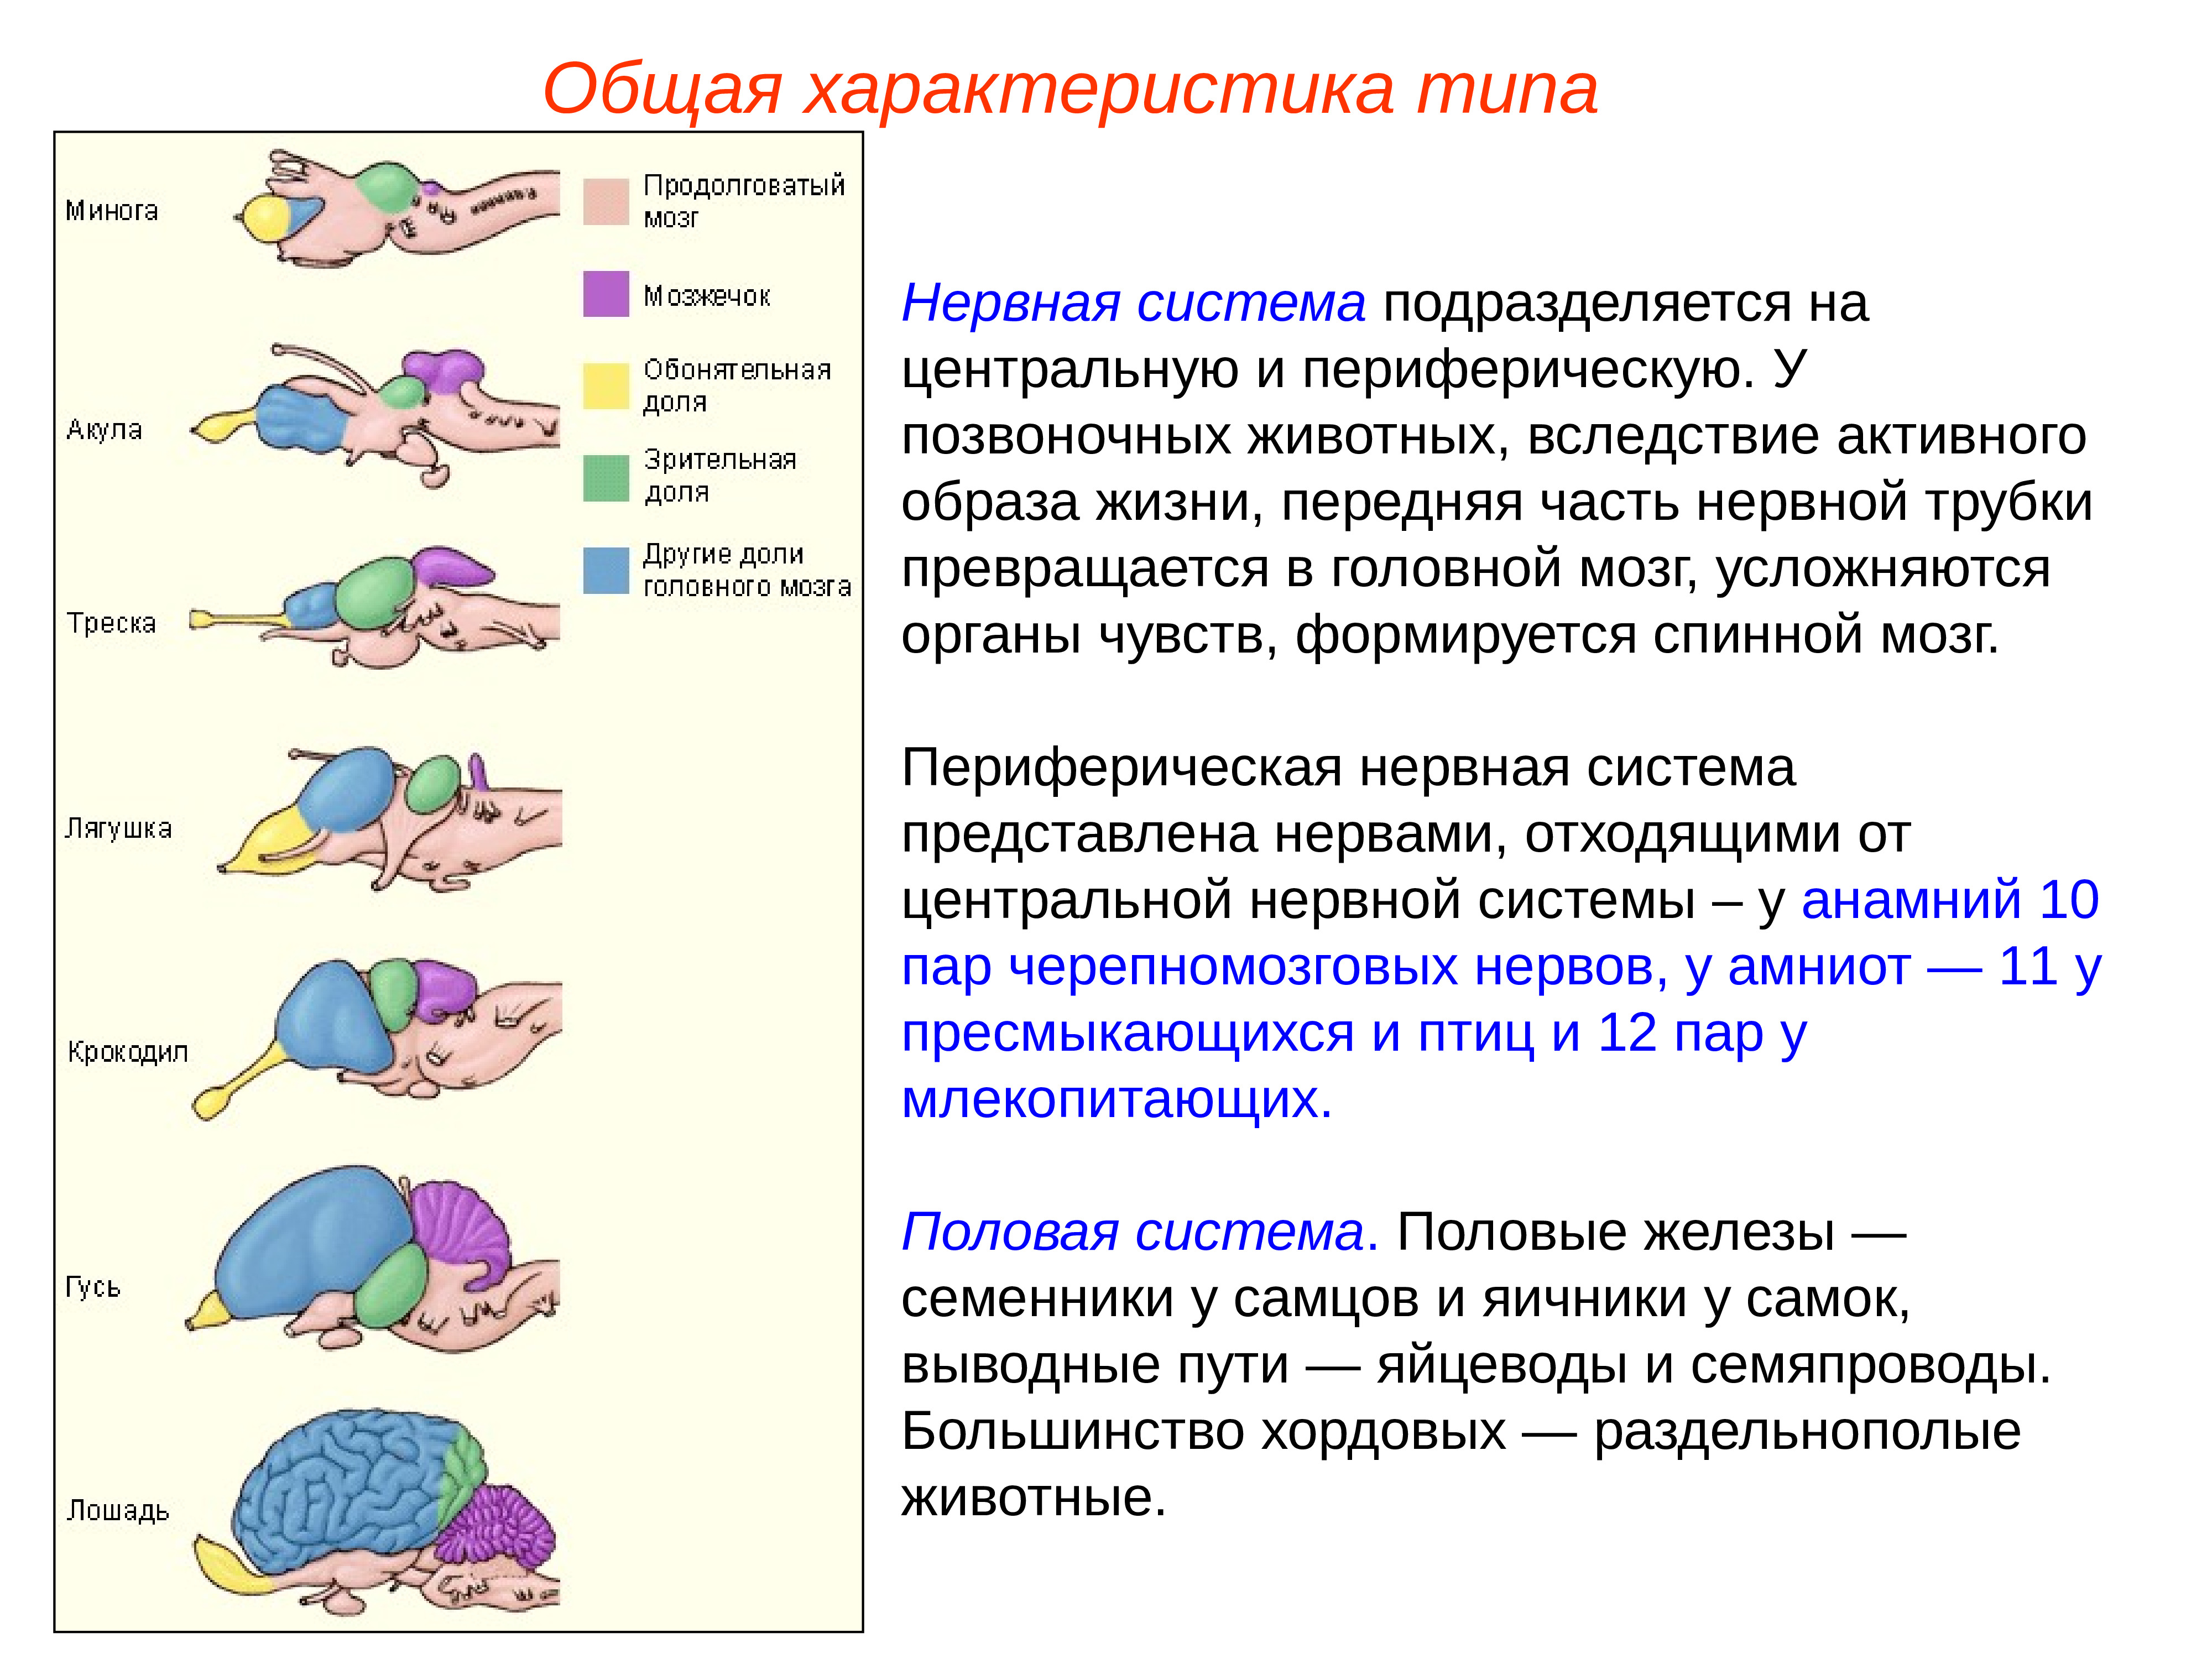 Сравнение мозгов позвоночных